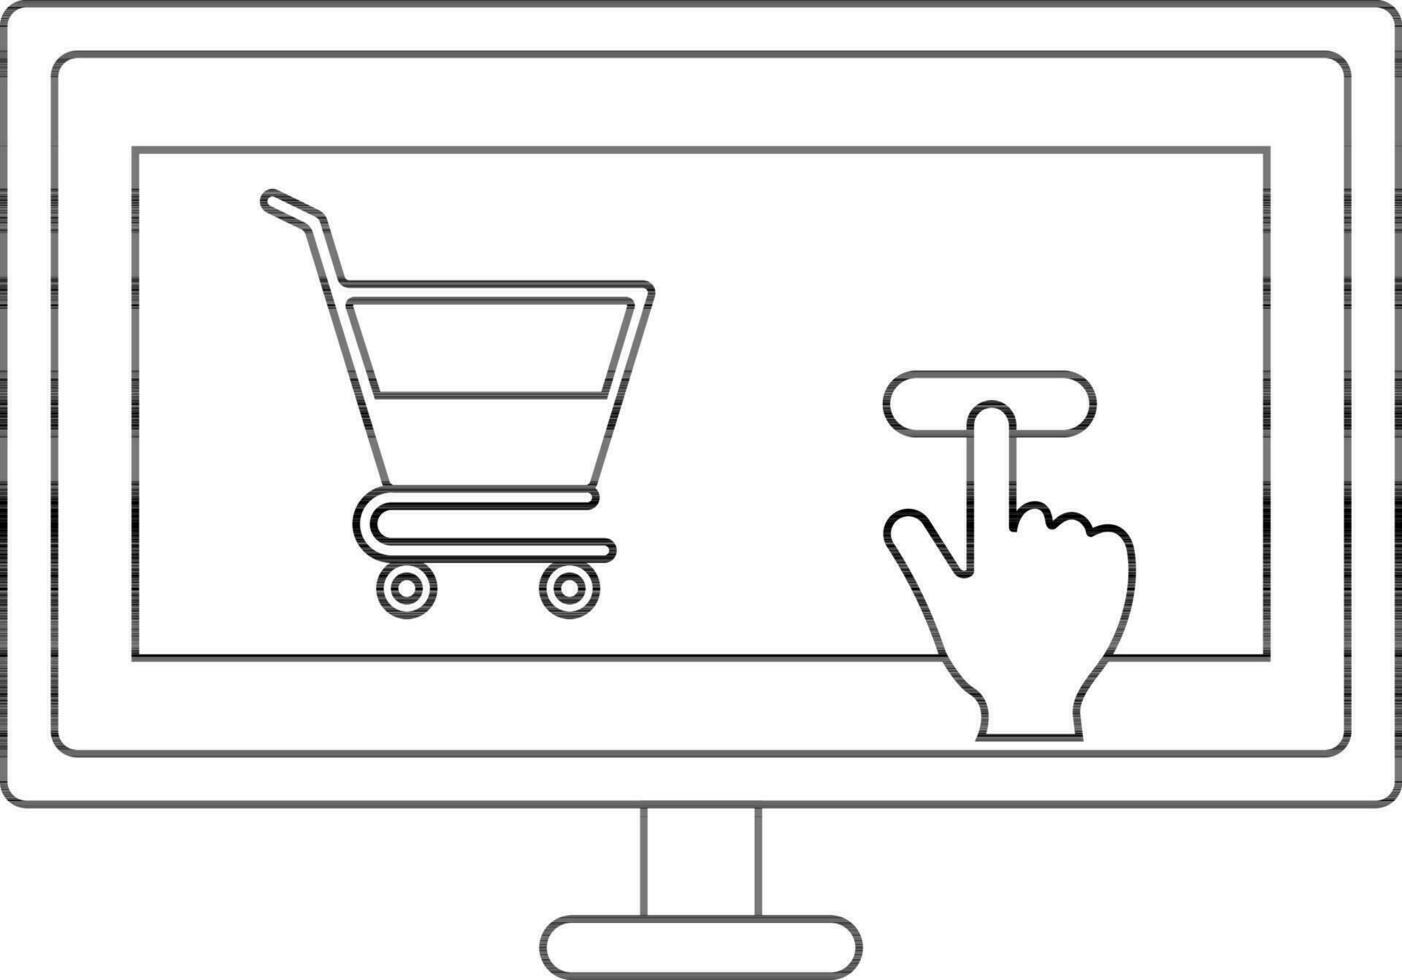 Basket in desktop screen for online payment. vector